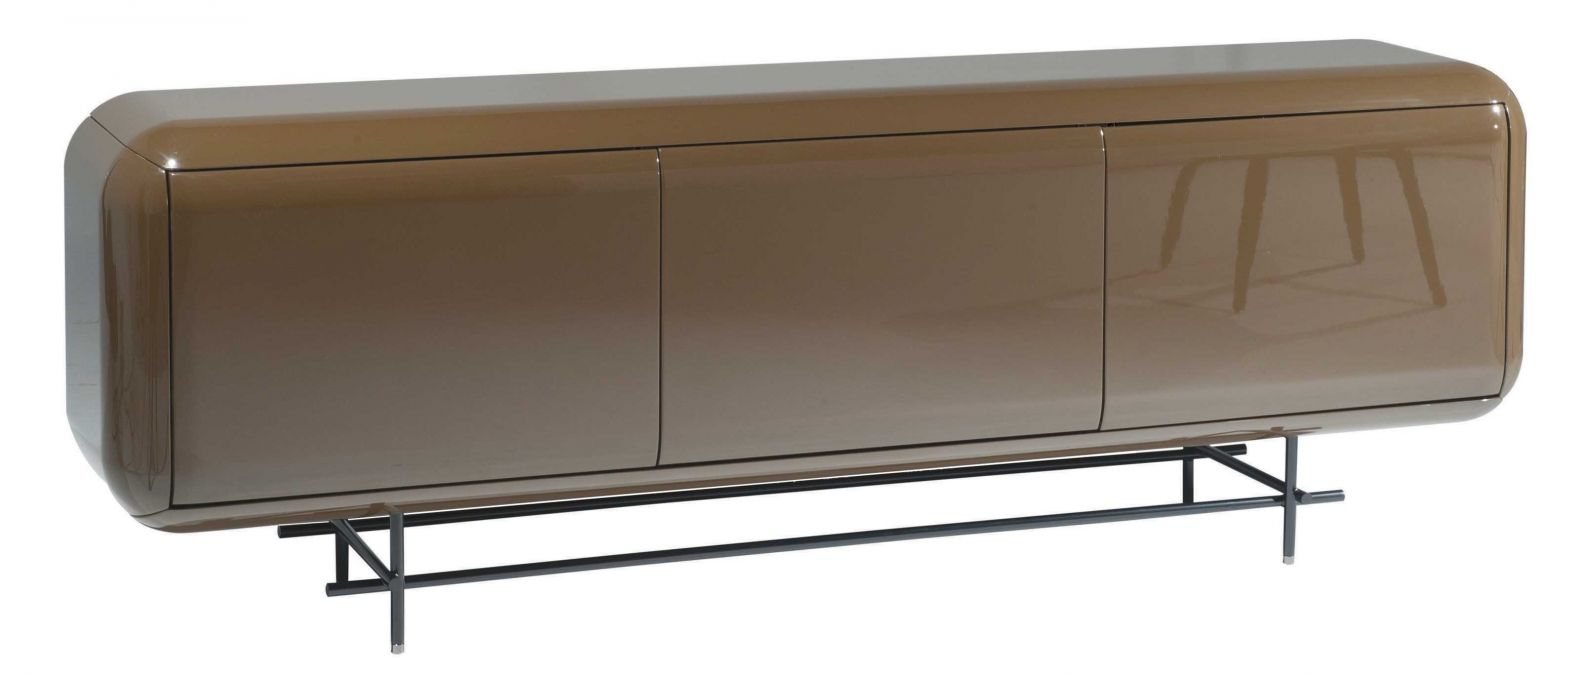 Fast schon ein Klassiker ist das Sideboard «Capsule» des Designers Cédric Ragot. Das Möbel wurde 2013 entworfen und kommt jetzt in einer leicht angepassten Version daher; neu steht es auf einem filigranen Untergestell. Erhältlich in einer hochglanzlackierten sowie einer Holz-Version. ROCHE-BOBOIS.